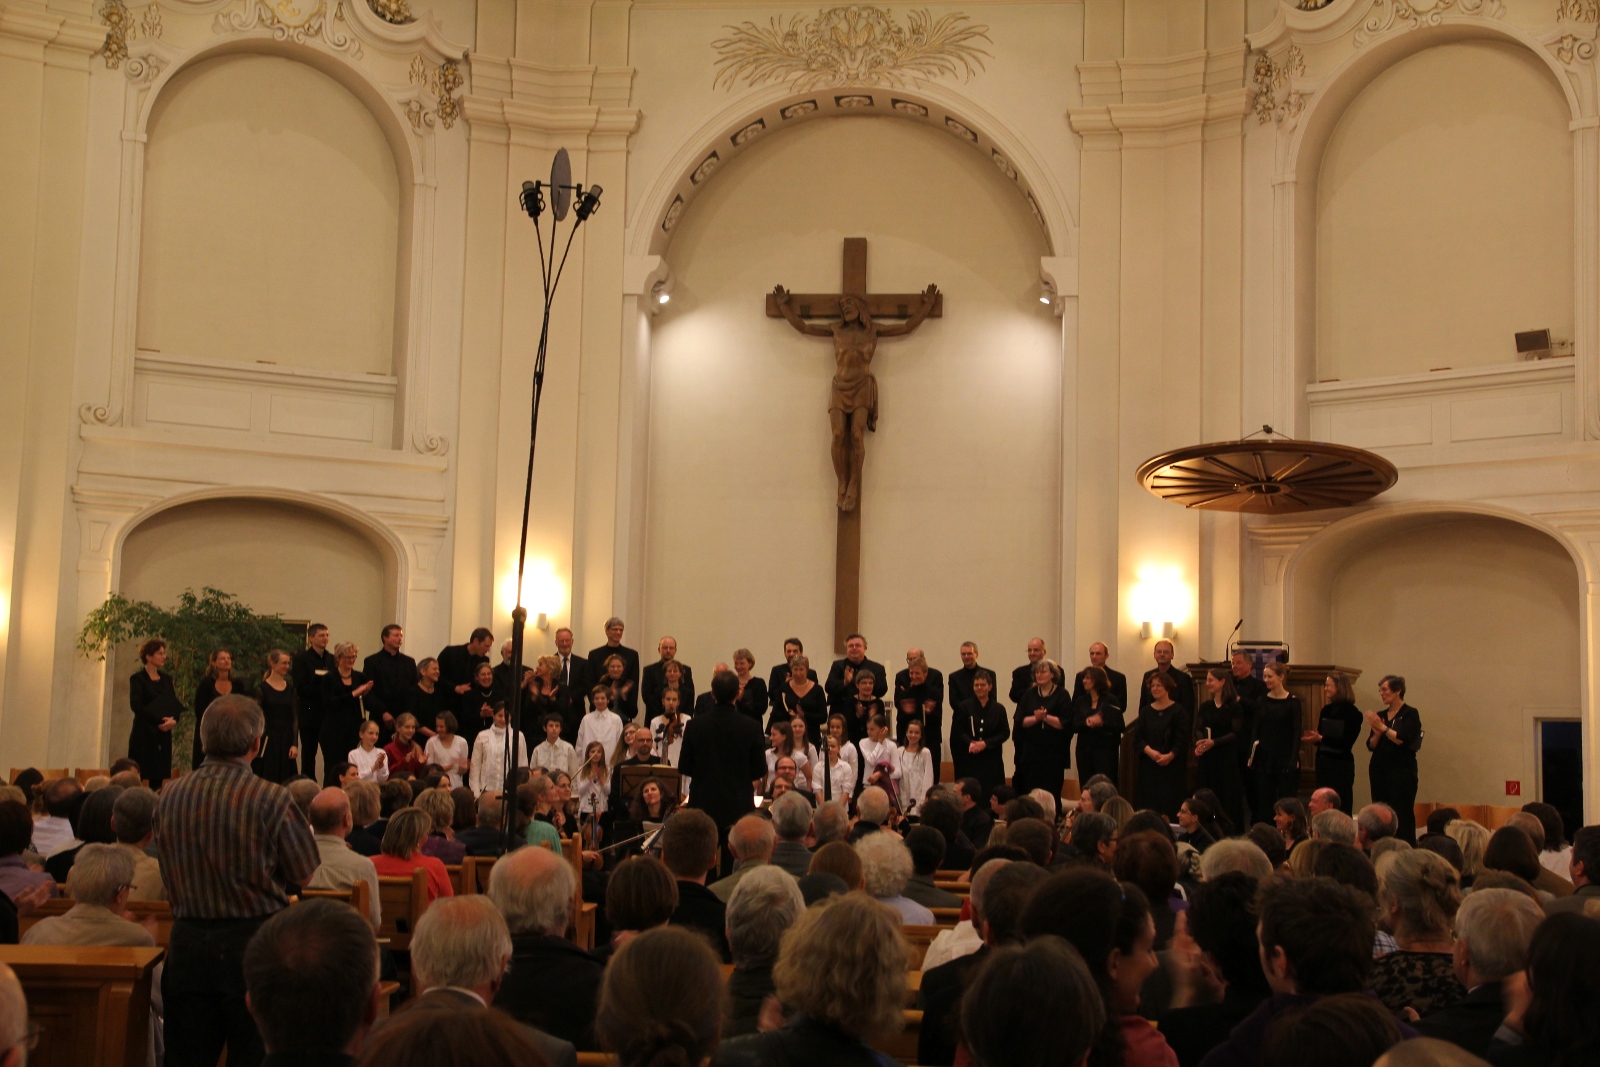 Bild 1 von der Aufführung der Matthäus-Passion am 22.04.2011 in der Stadtkirche Ludwigsburg. Bild: Gesine Hofinger/Michael Brenner.